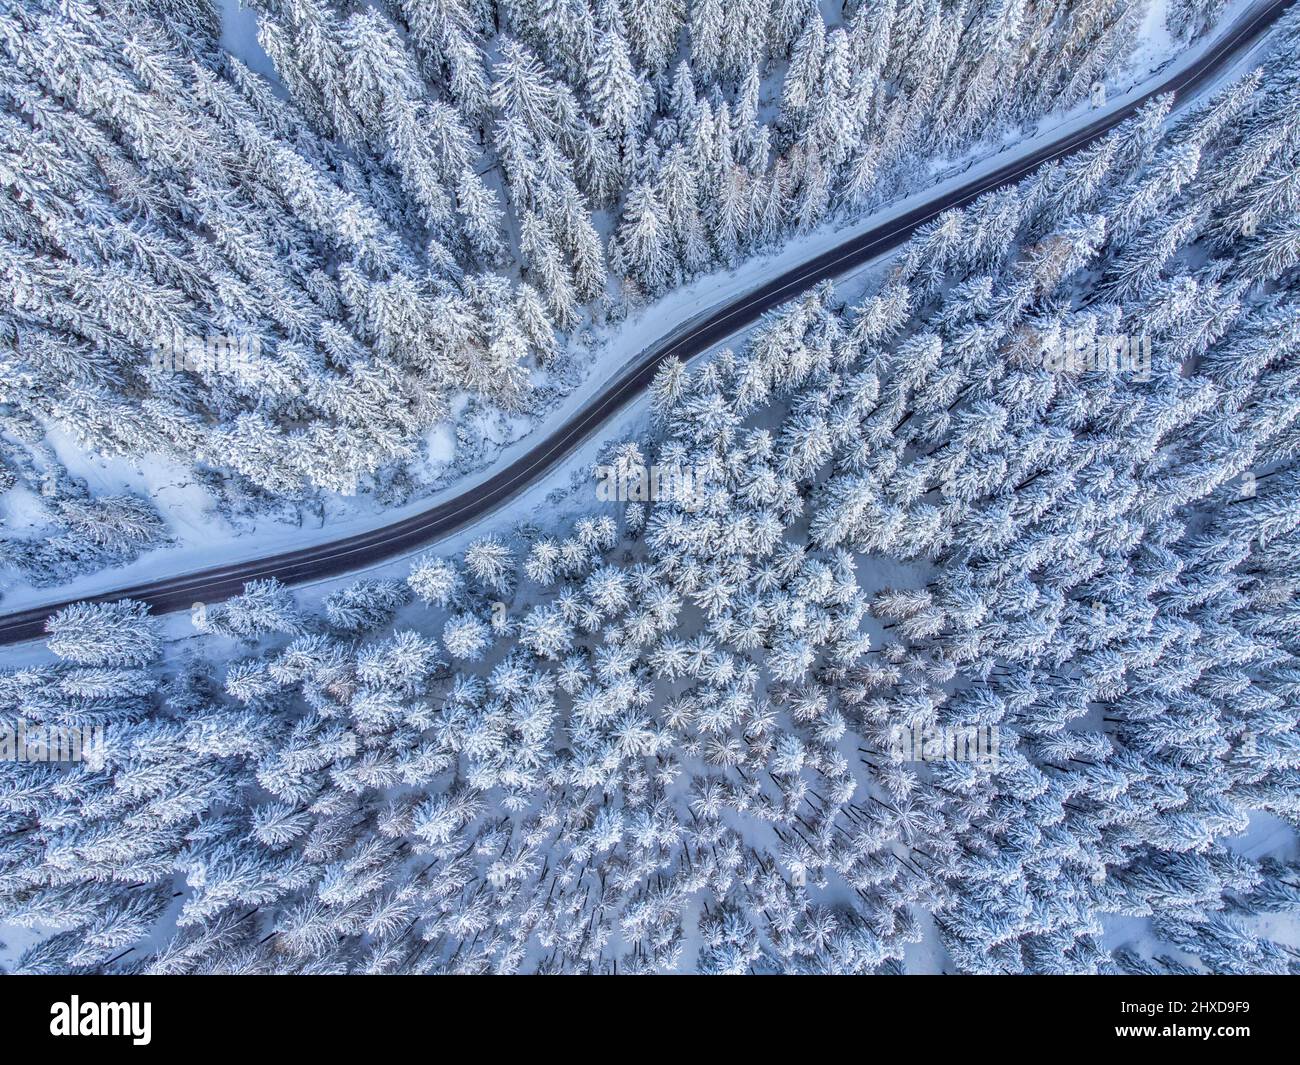 Europa, Italia, Veneto, provincia di Belluno, Dolomiti, strada di montagna che attraversa una foresta di conifere dopo una nevicata, vista dall'alto Foto Stock